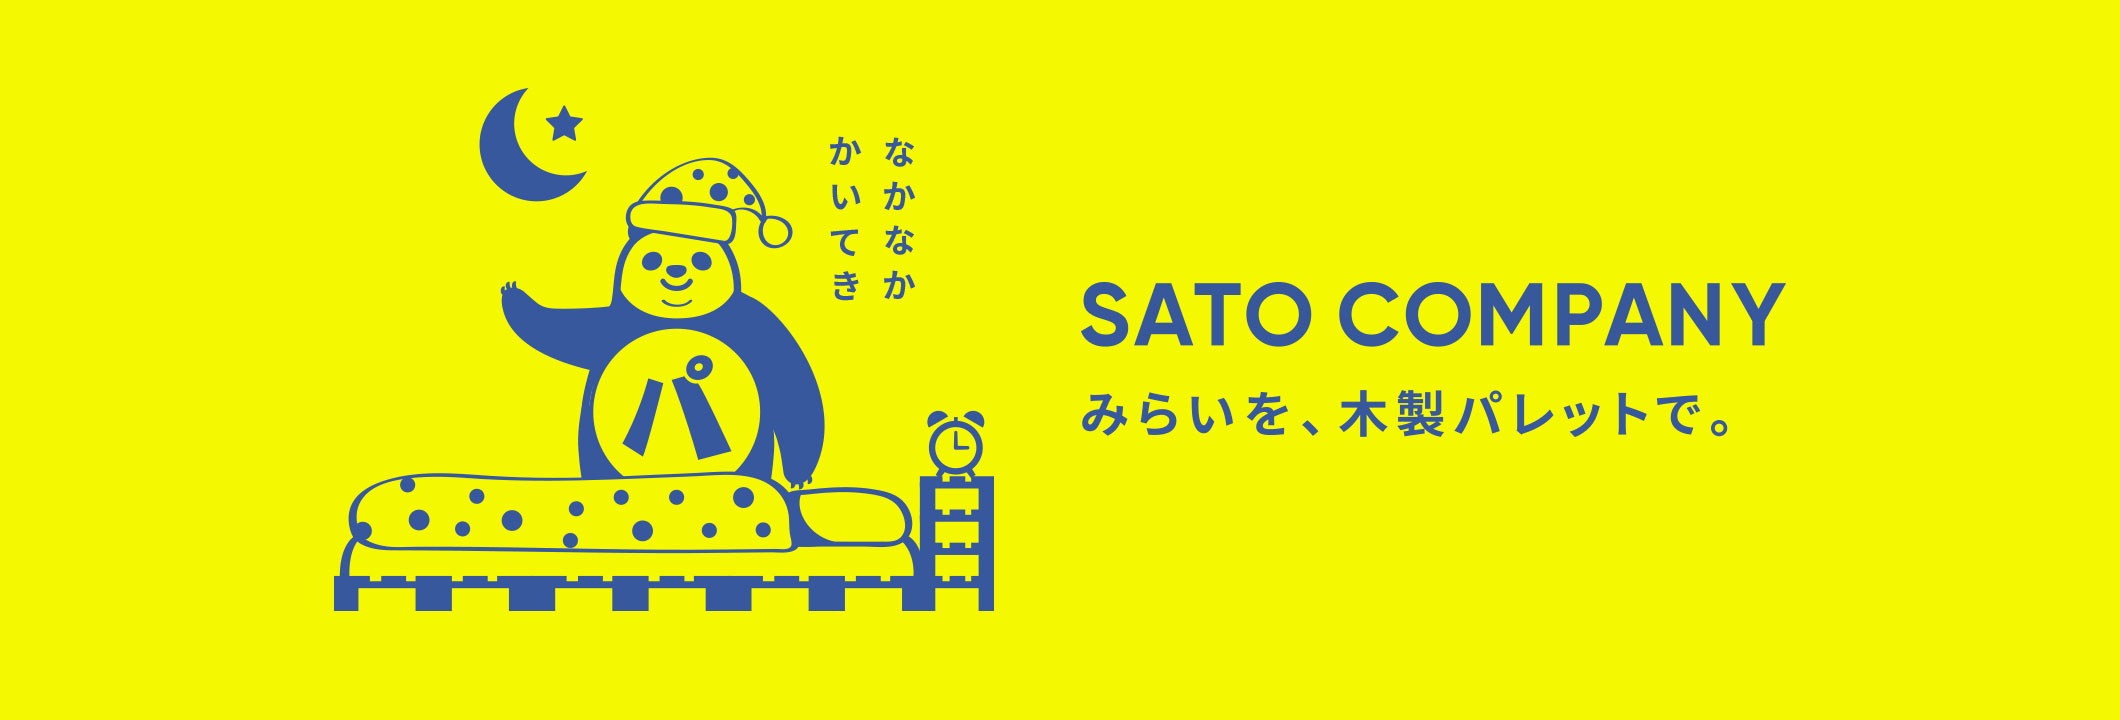 SATO COMPANYデザインイメージ